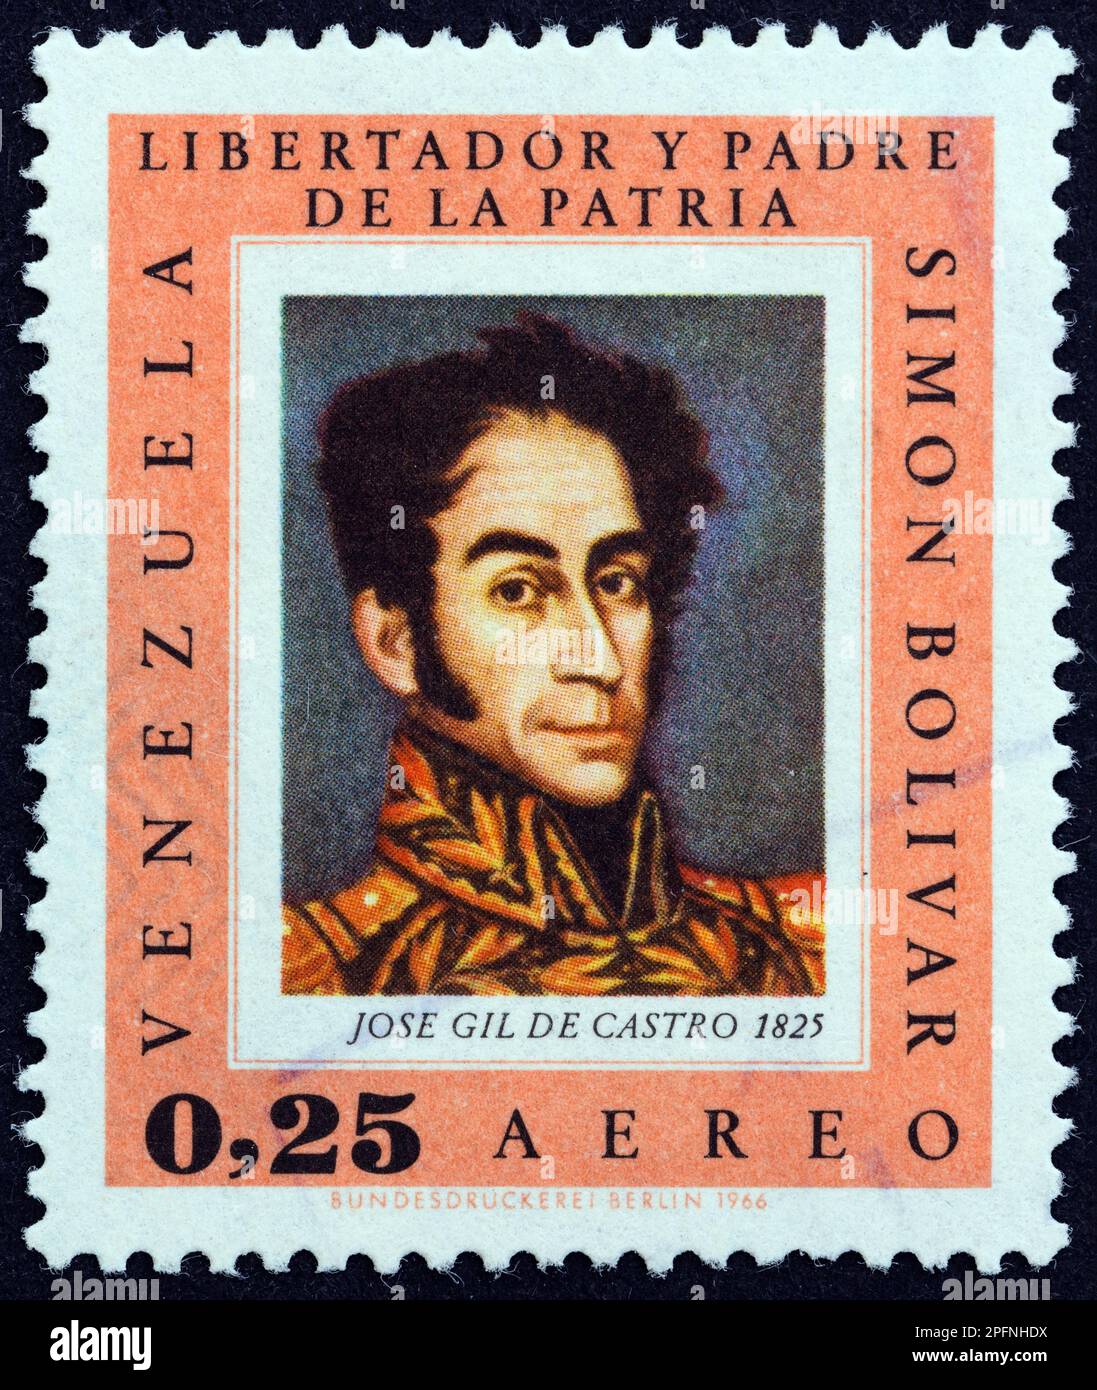 VENEZUELA - CIRCA 1966: Ein in Venezuela gedruckter Stempel aus der Ausgabe "Bolivar Commemoration, 1783-1830" zeigt Simon Bolivar von Jose Gil de Castro. Stockfoto